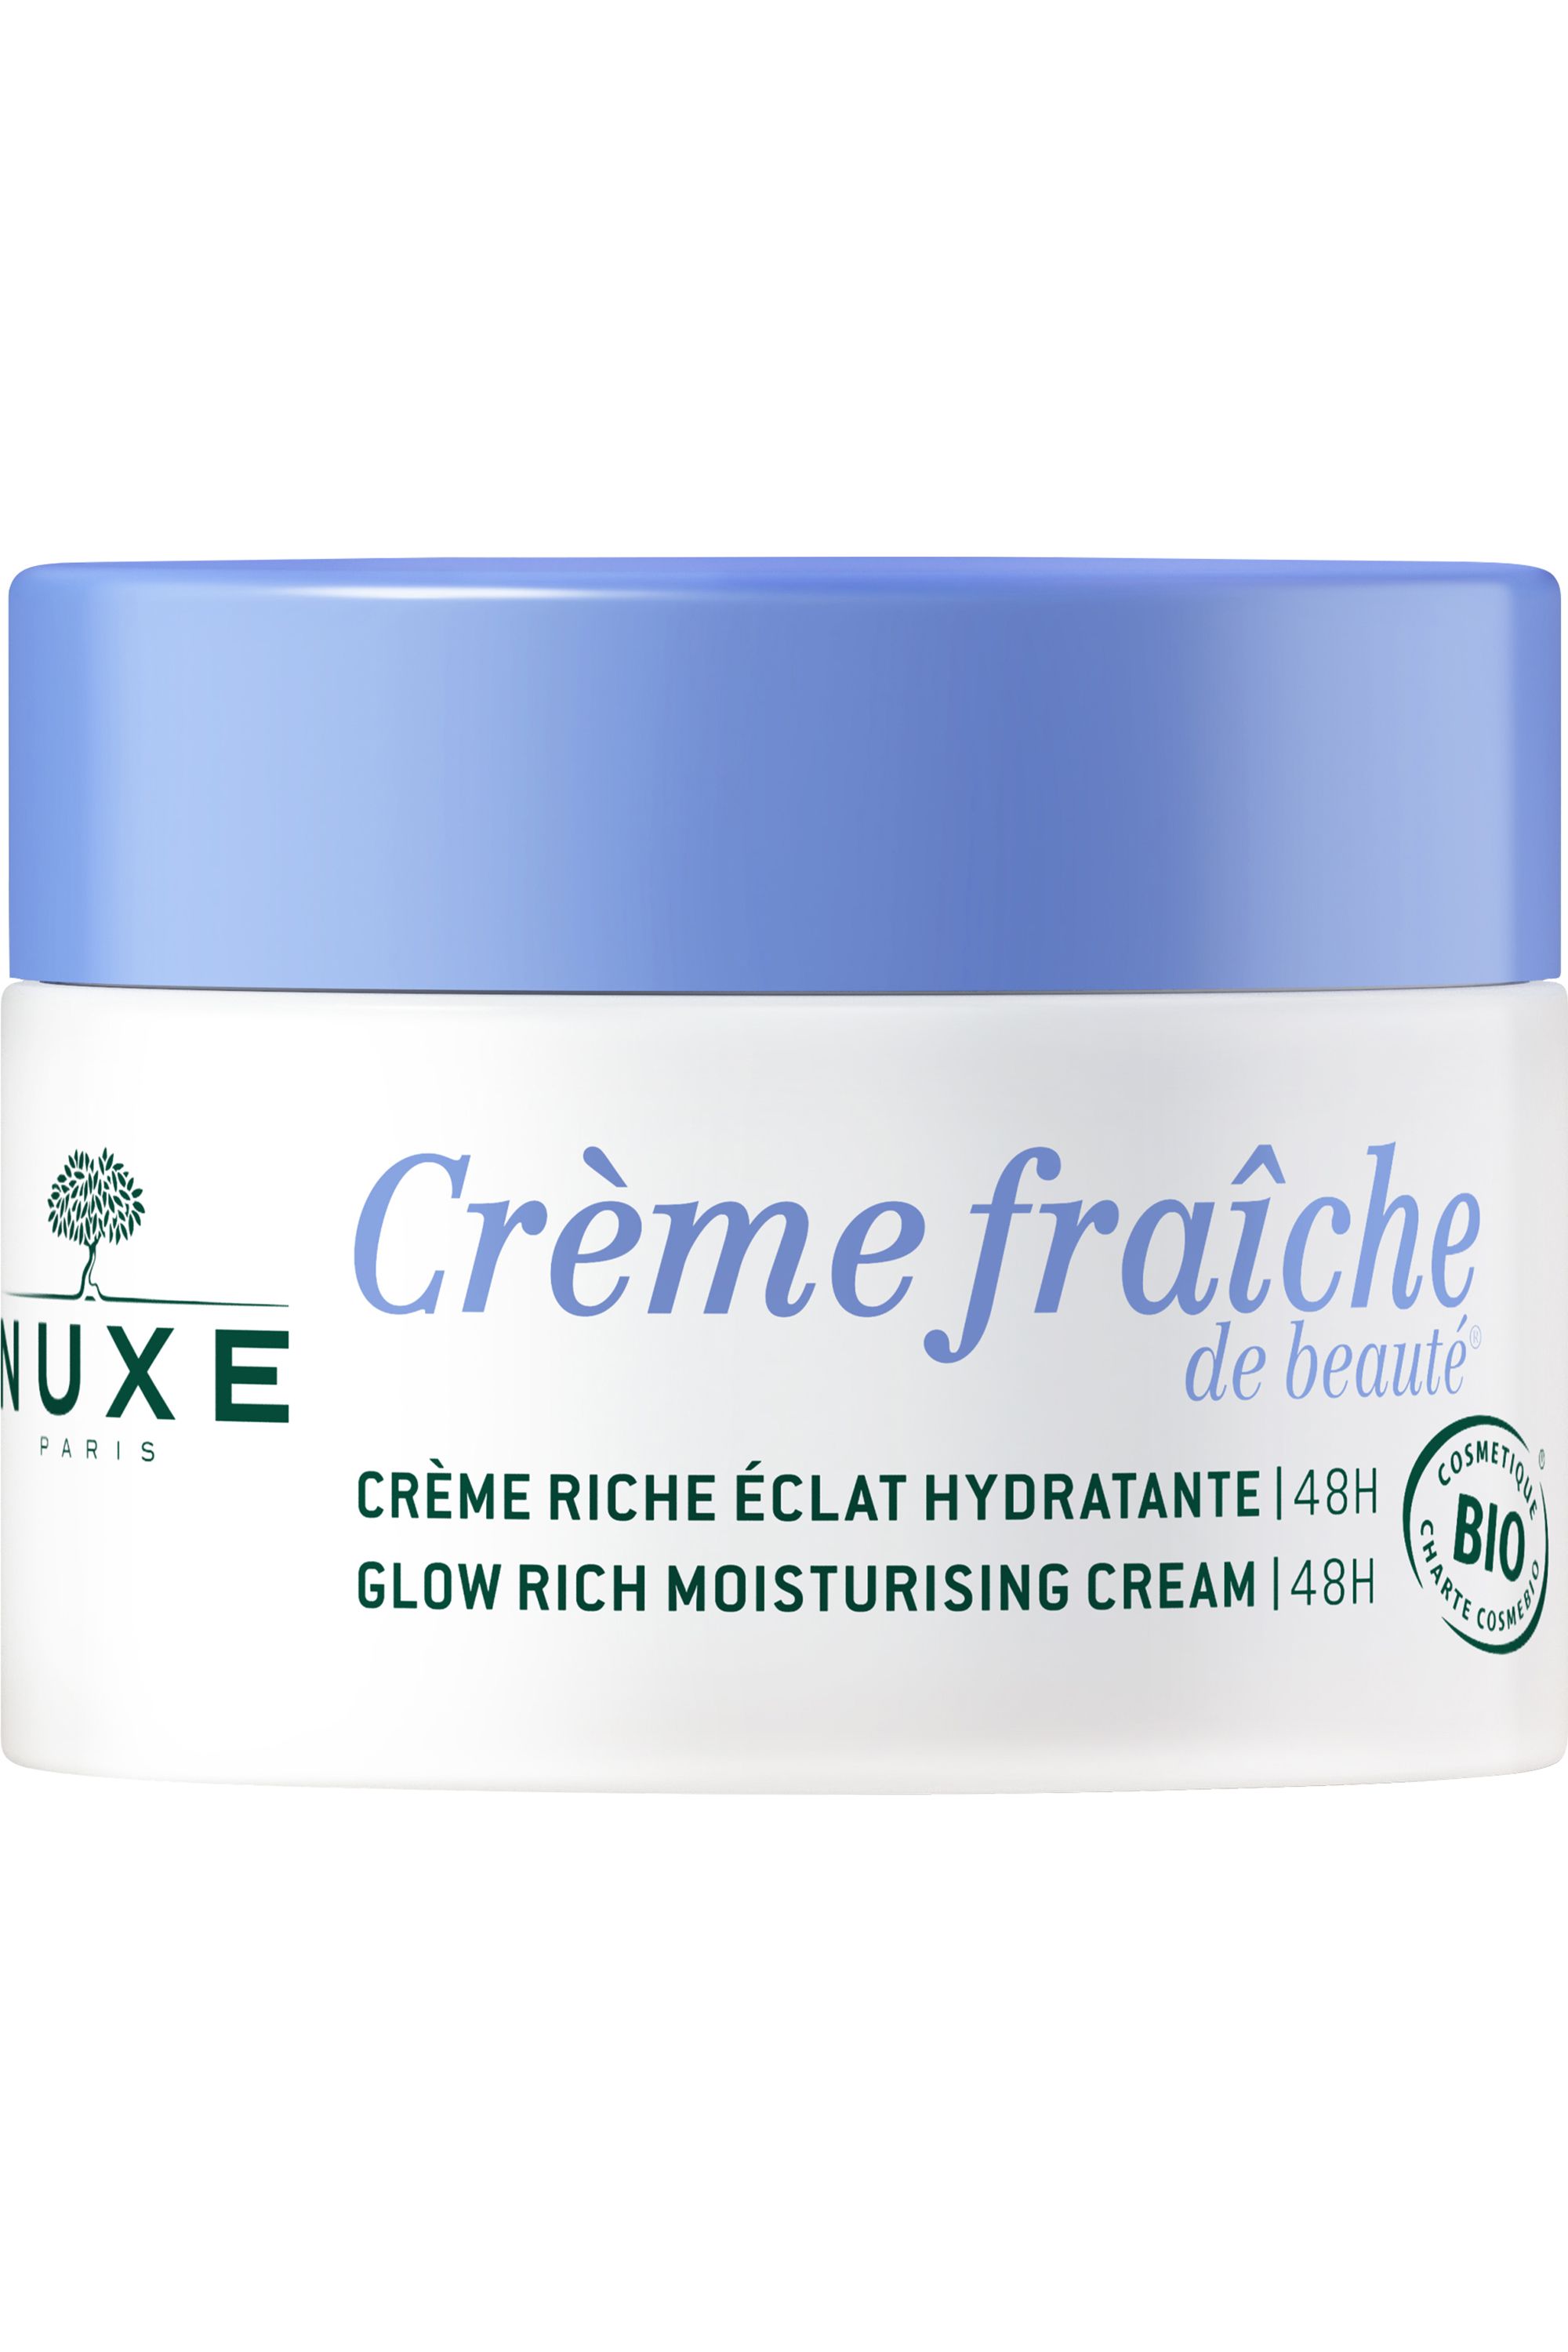 Achetez Nuxe Masque Crème Fraîche de Beauté 50ml à 16.2€ seulement